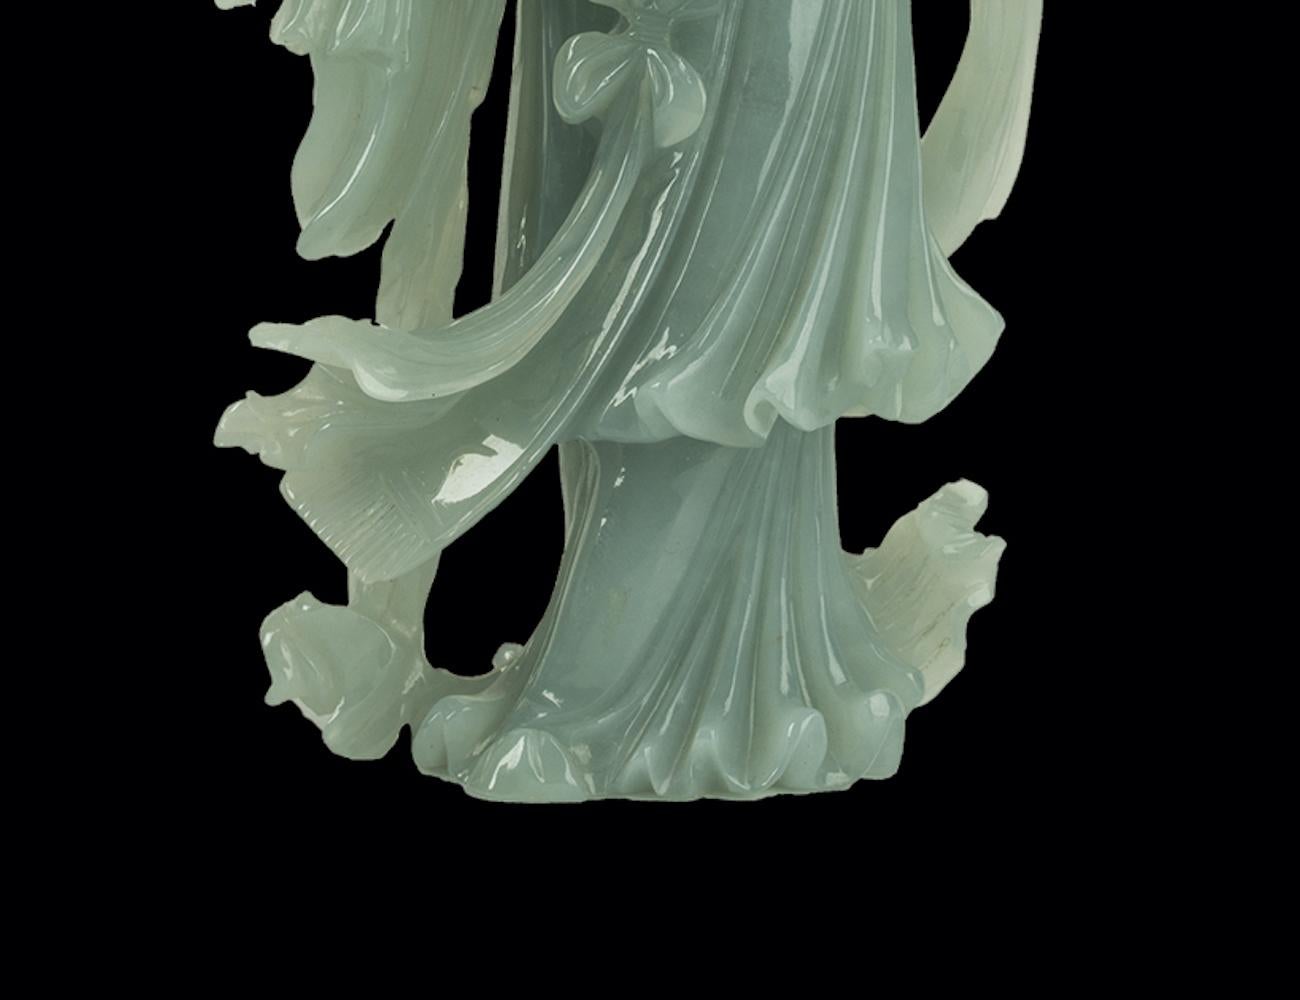 Diese Jadeitschnitzerei einer stehenden Dame wurde im 20. Jahrhundert in China hergestellt.

Diese kostbare Statue ist aus grünem Jadeit gefertigt und hat die Form einer jungen Dame in einem langen Gewand.

In ausgezeichnetem Zustand.